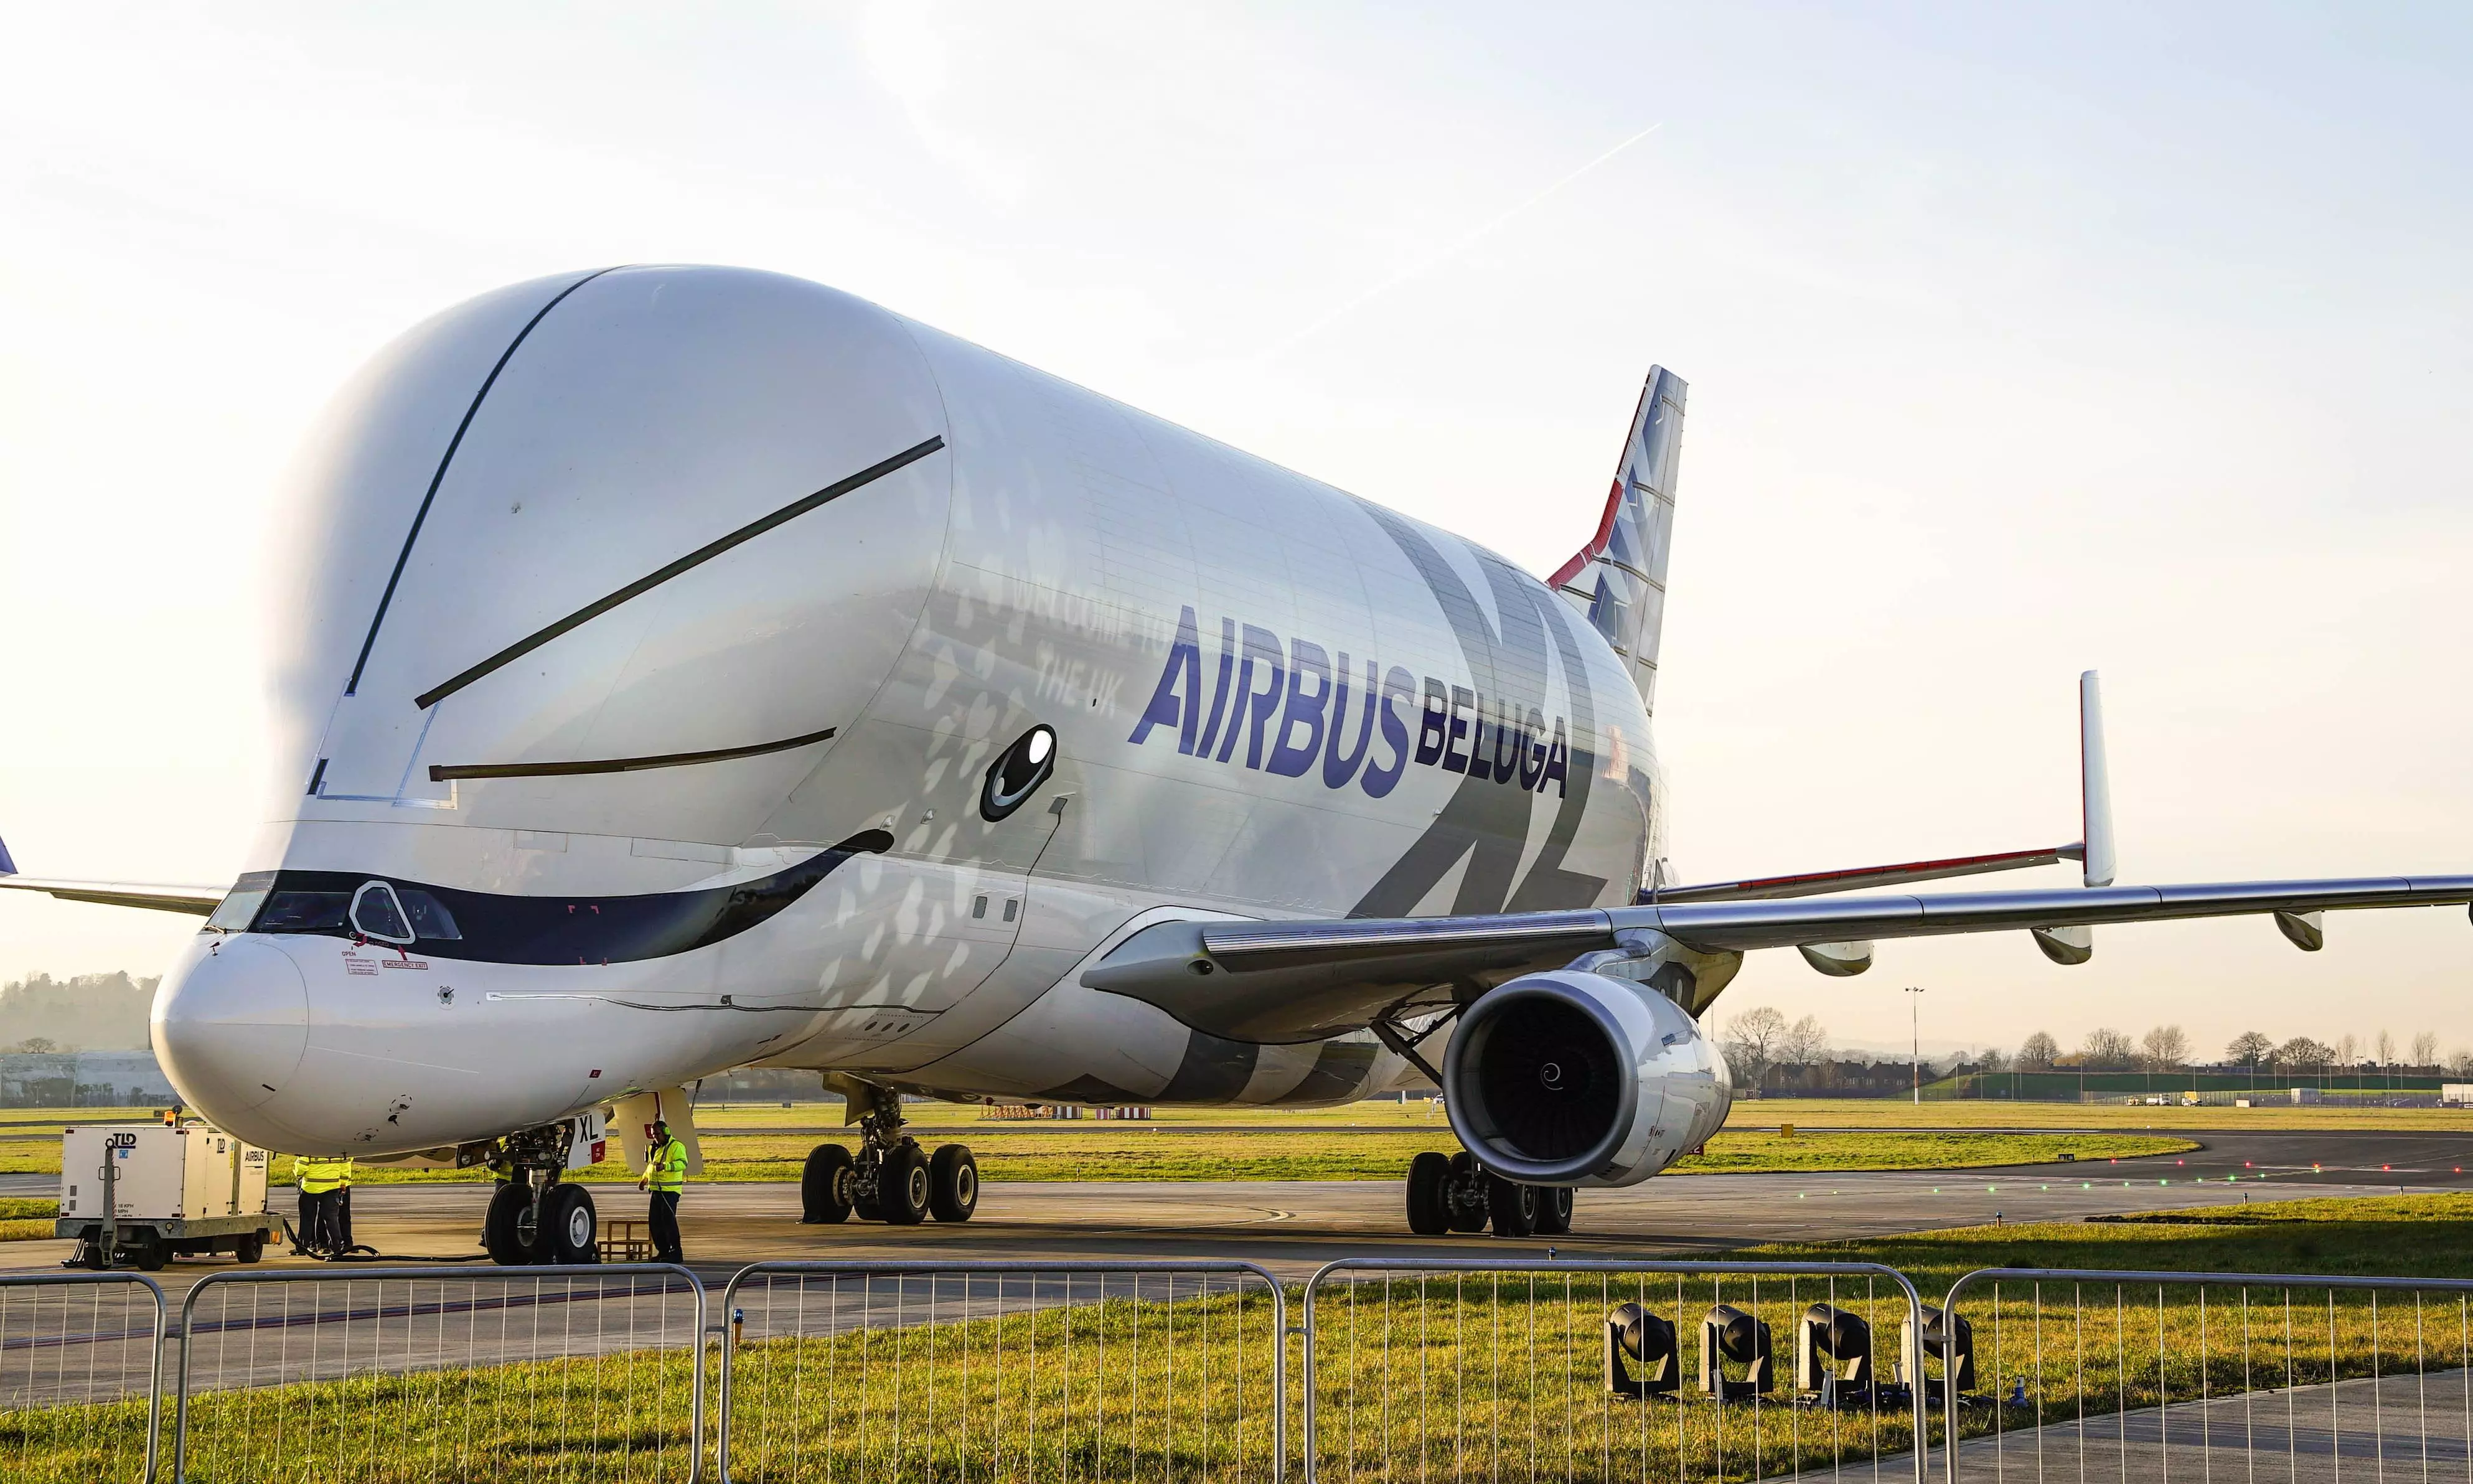 Самый большой самолет в мире: крупнейший пассажирский и грузовой авиалайнеры, их вместимость и грузоподъемность, фото и технические параметры.